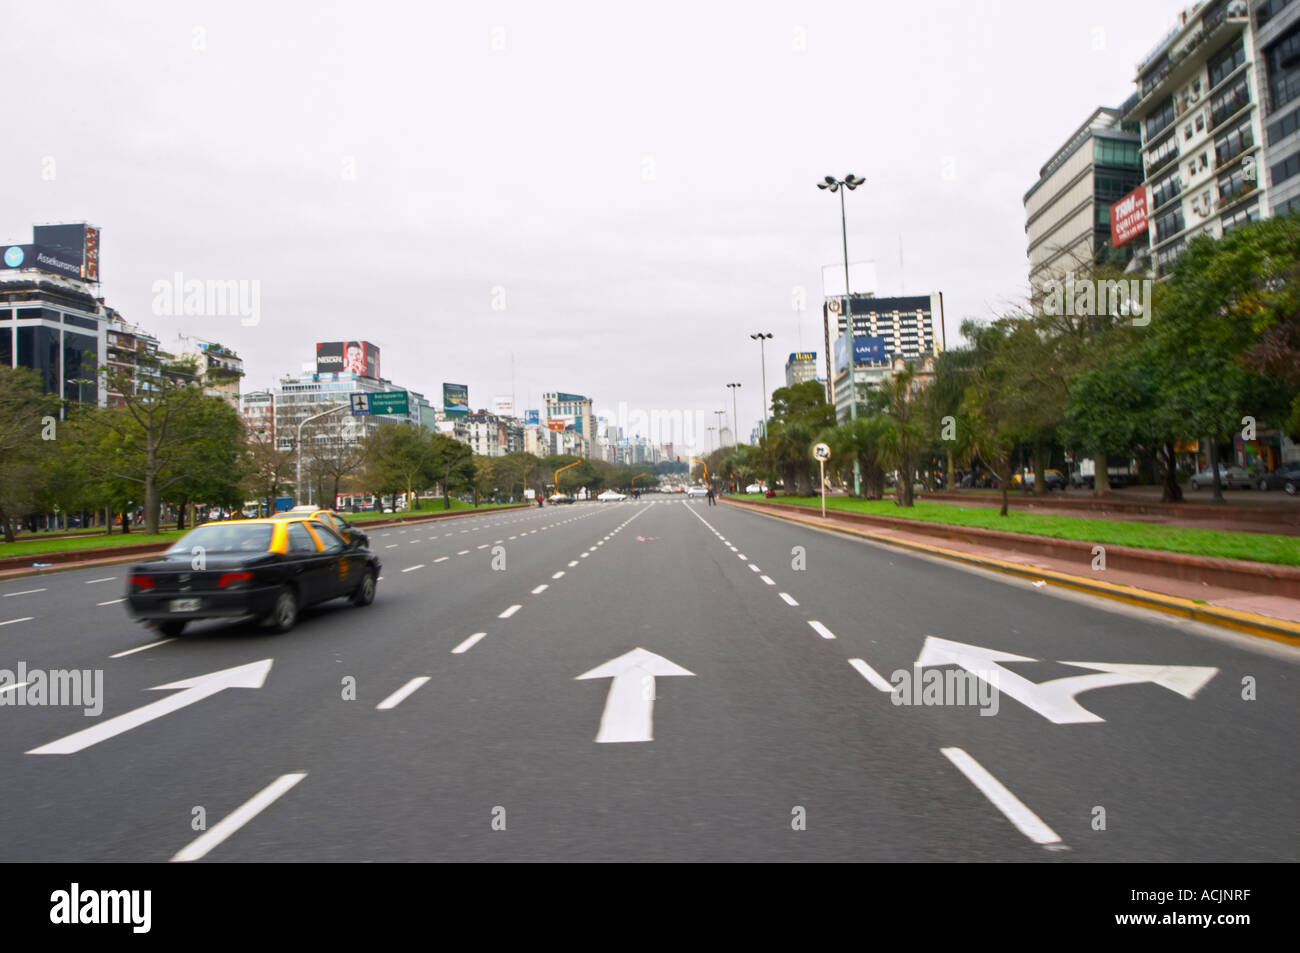 L'Avenida 9 de Julio Avenue 9e de Juillet, dit être le plus grand du monde, la rue bordée d'arbres et d'immeubles de bureaux modernes. Des taxis Buenos Aires Argentine, Amérique du Sud Banque D'Images